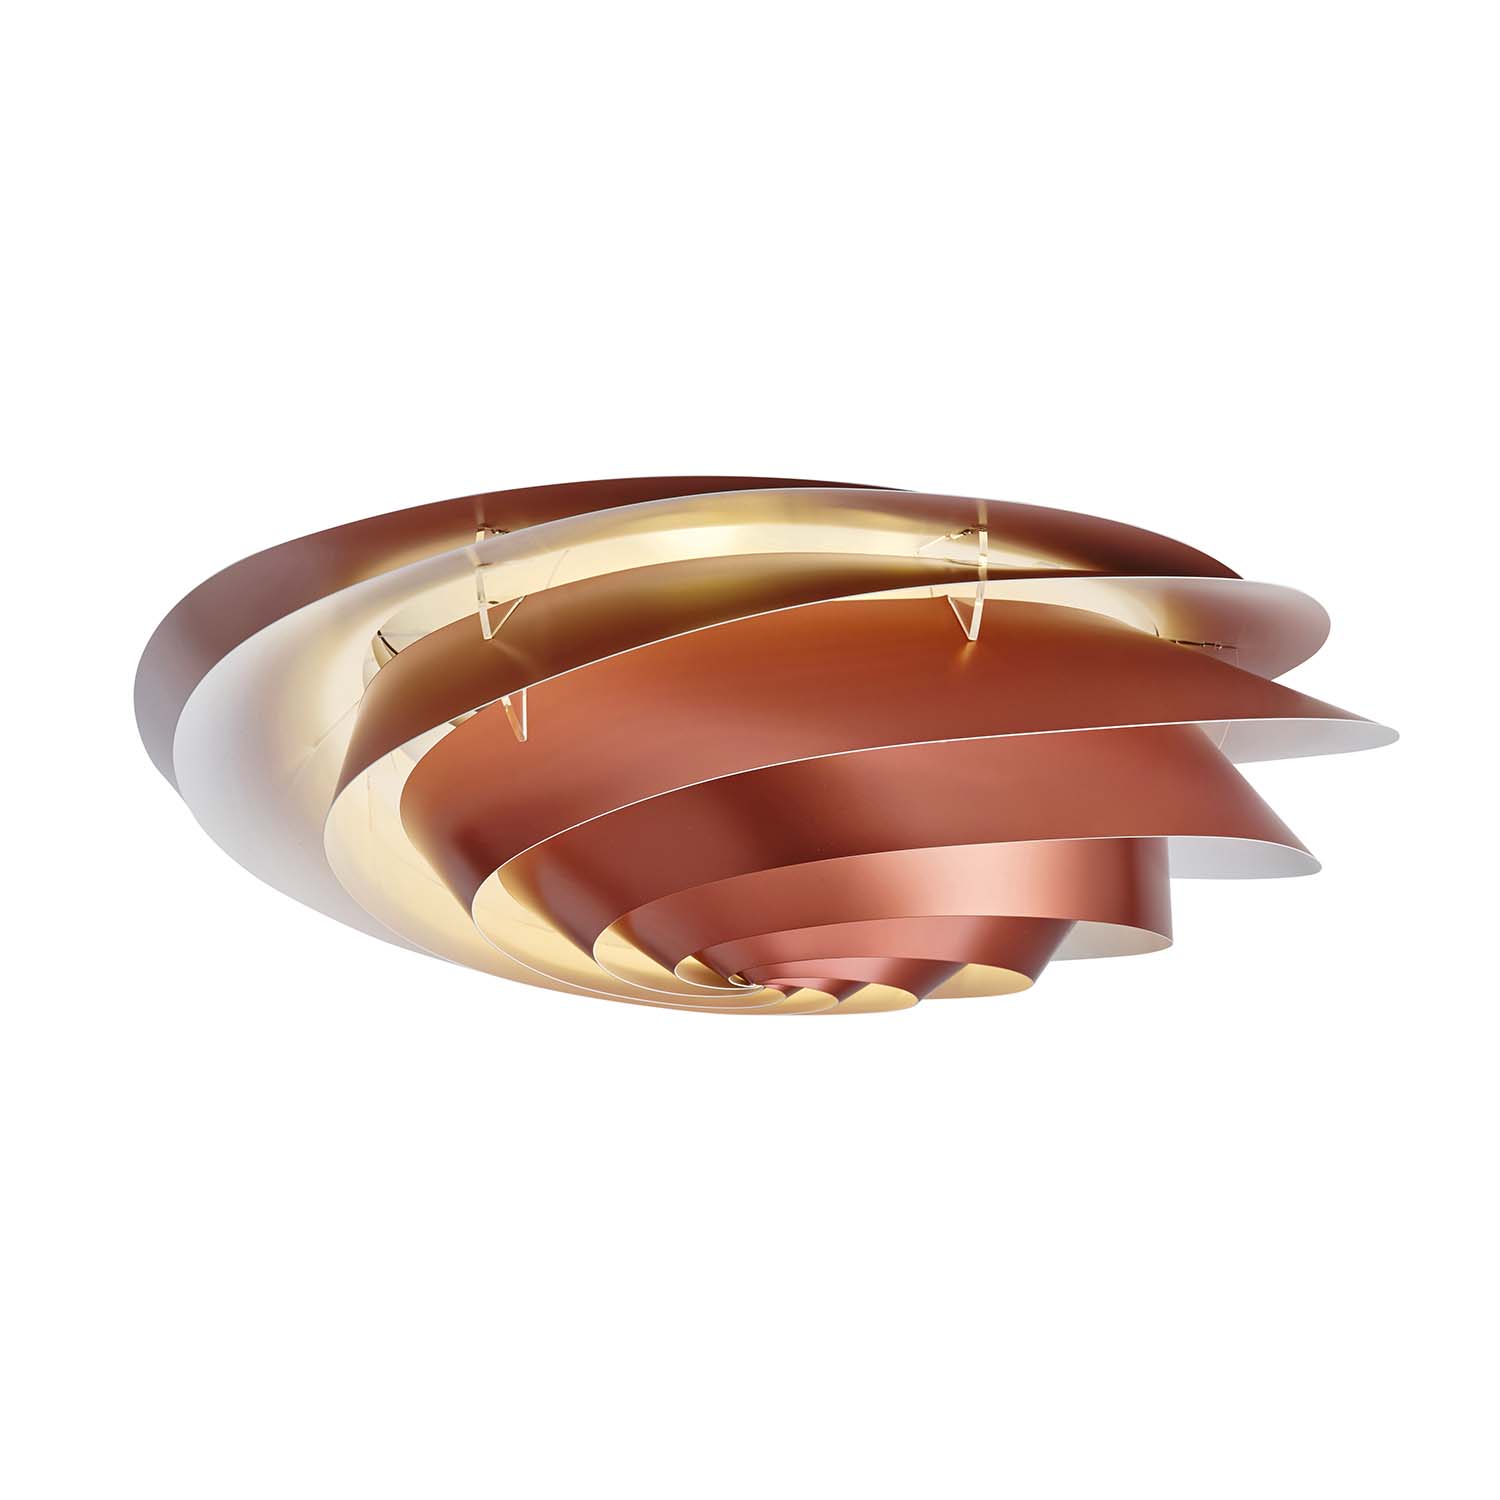 SWIRL Ceiling - White or copper spiral ceiling light, designer creation